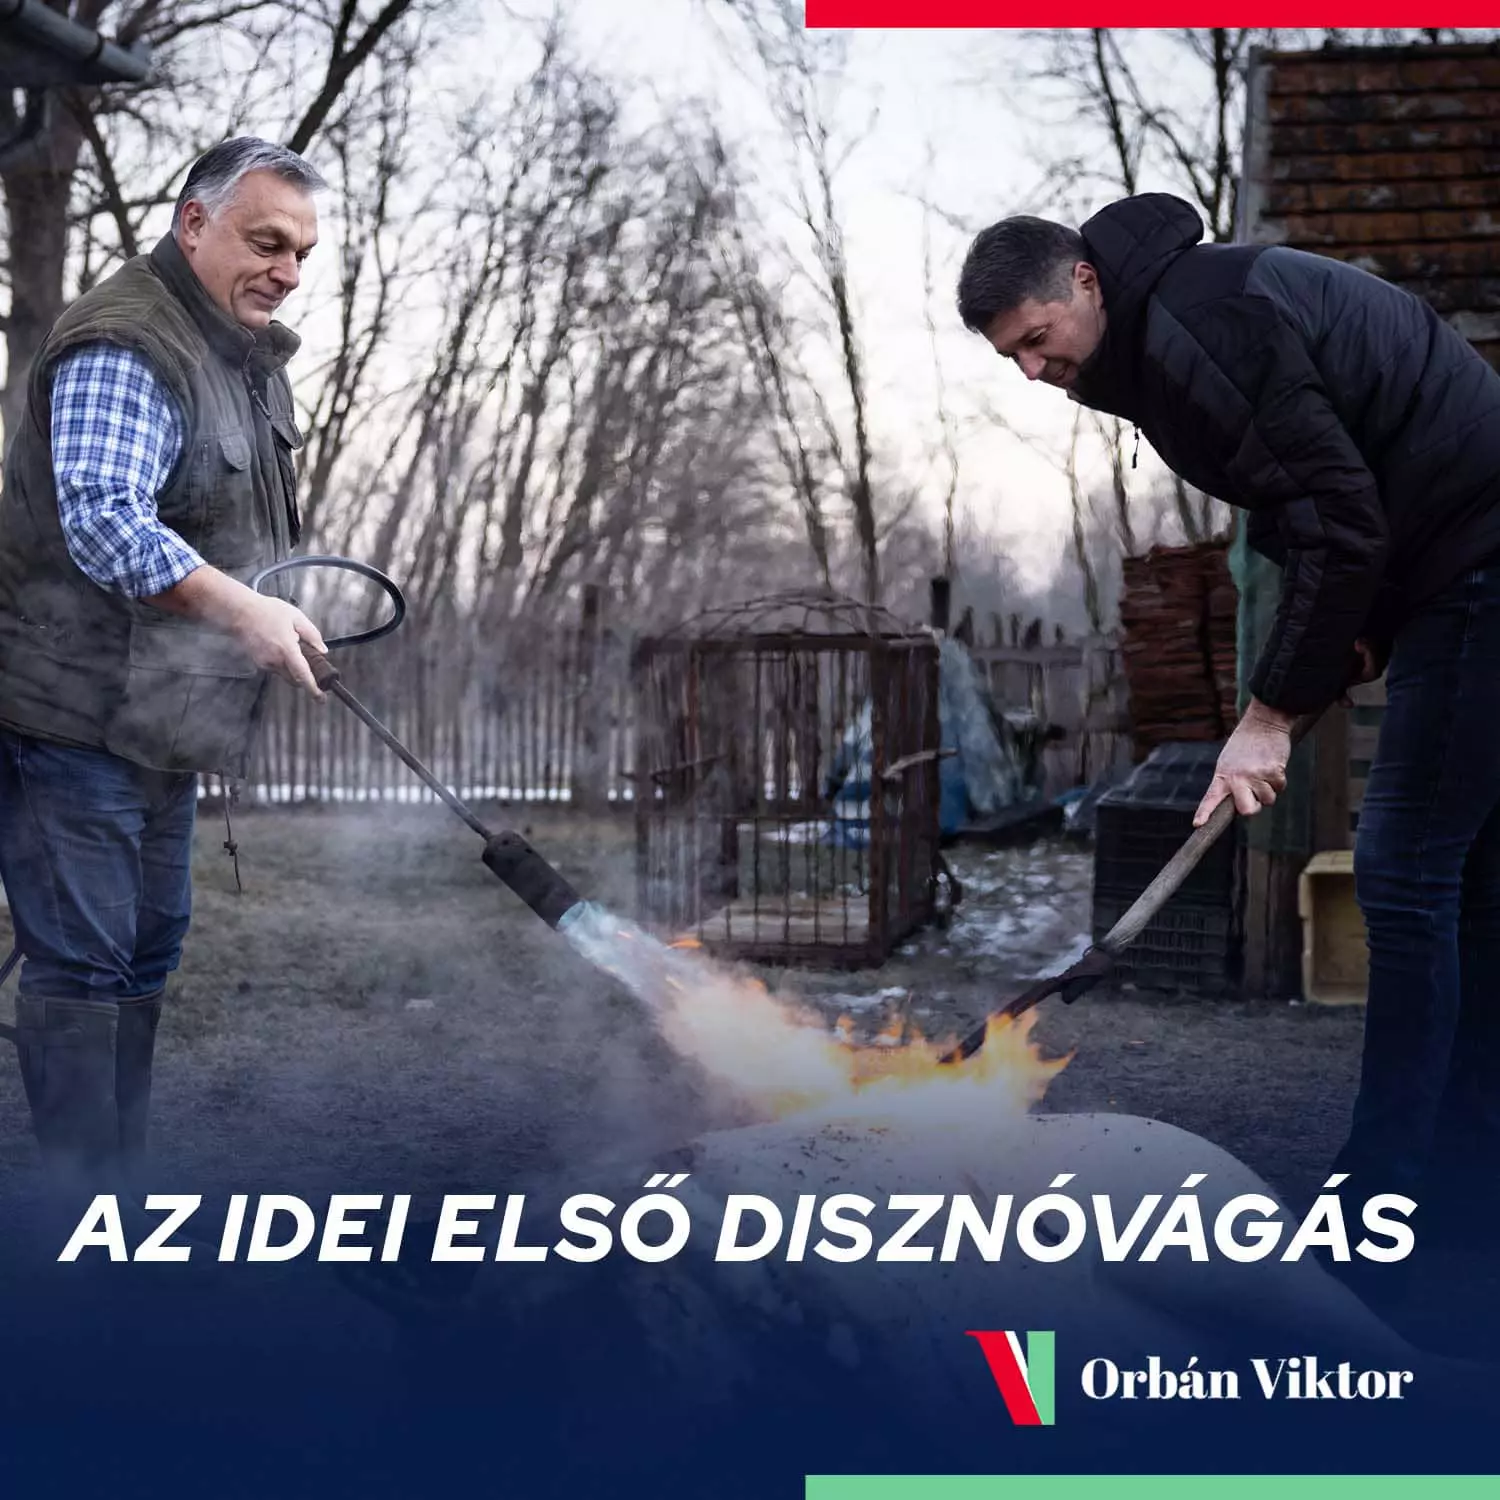 Pig Slaughter Viktor Orbán 3